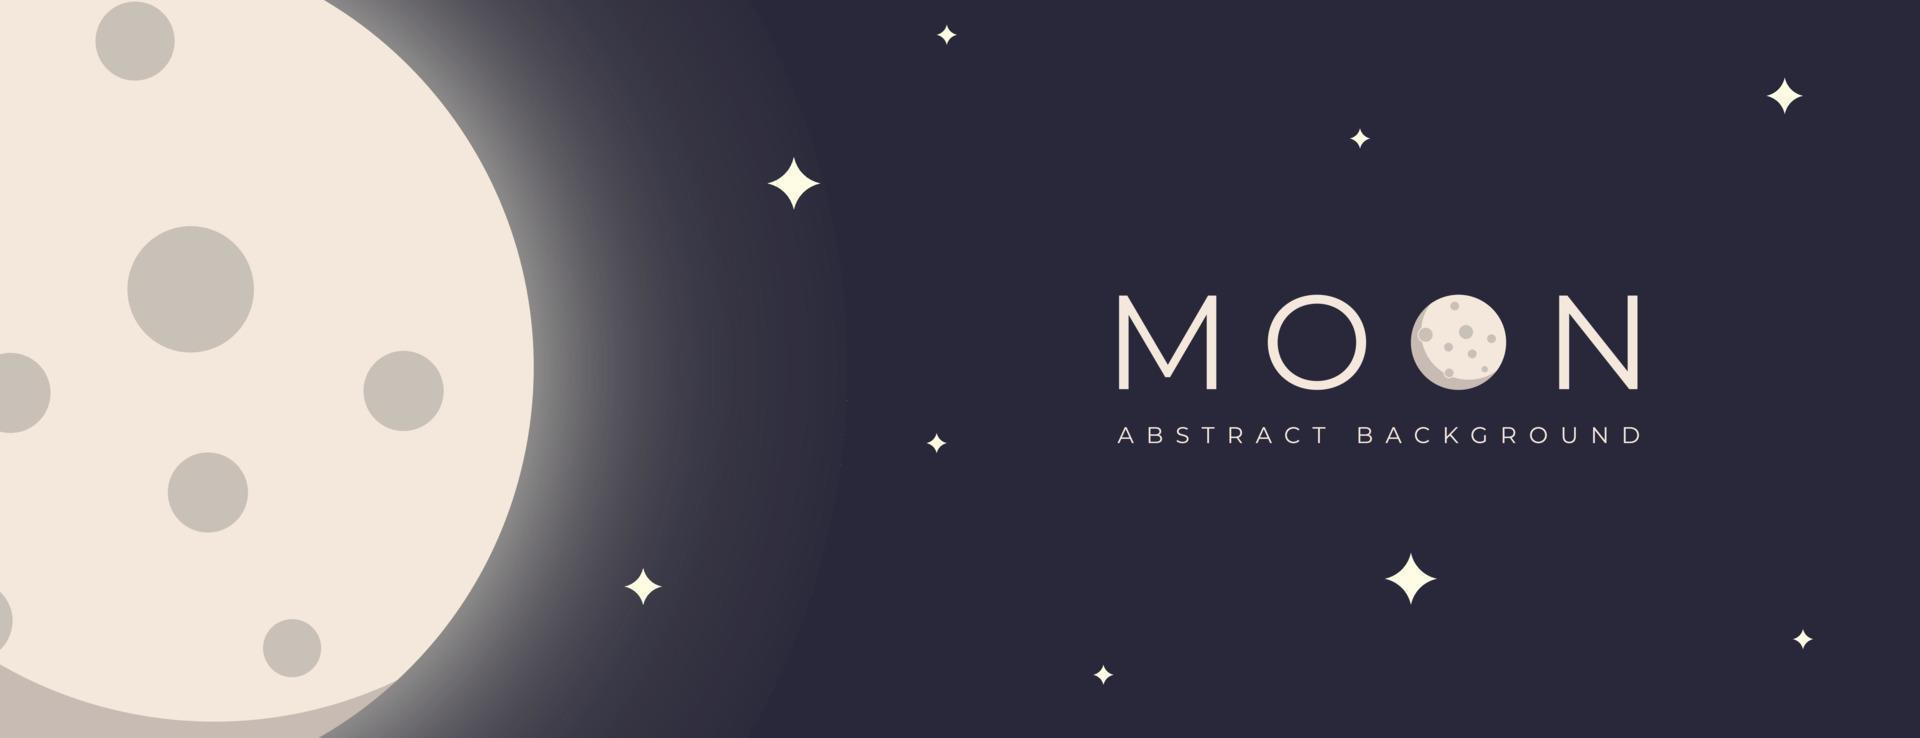 abstracte maan achtergrond. maan vectorillustratie. platte en schone stijl. vector illustratie eps10